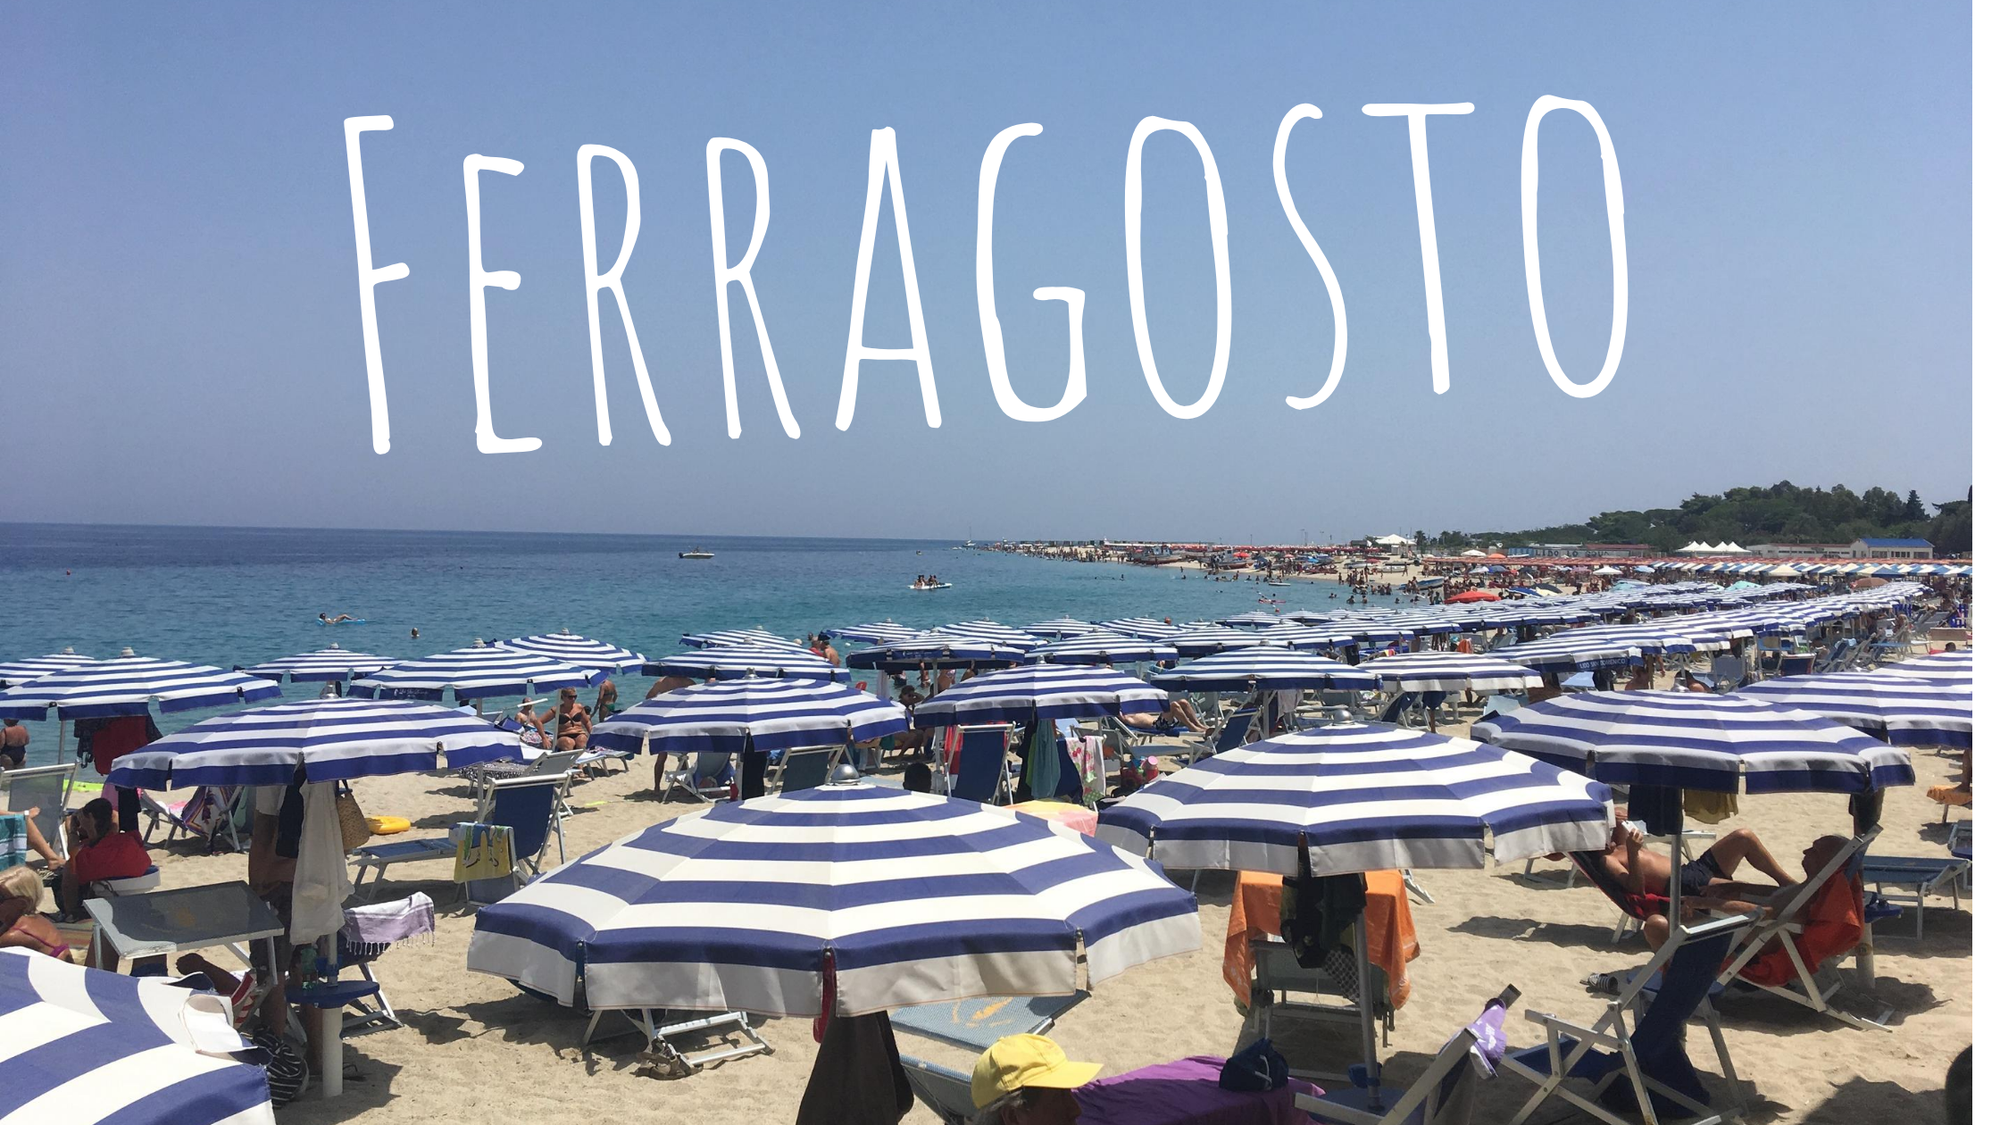 Ferragosto Holidays - an Italian vacation for any taste!